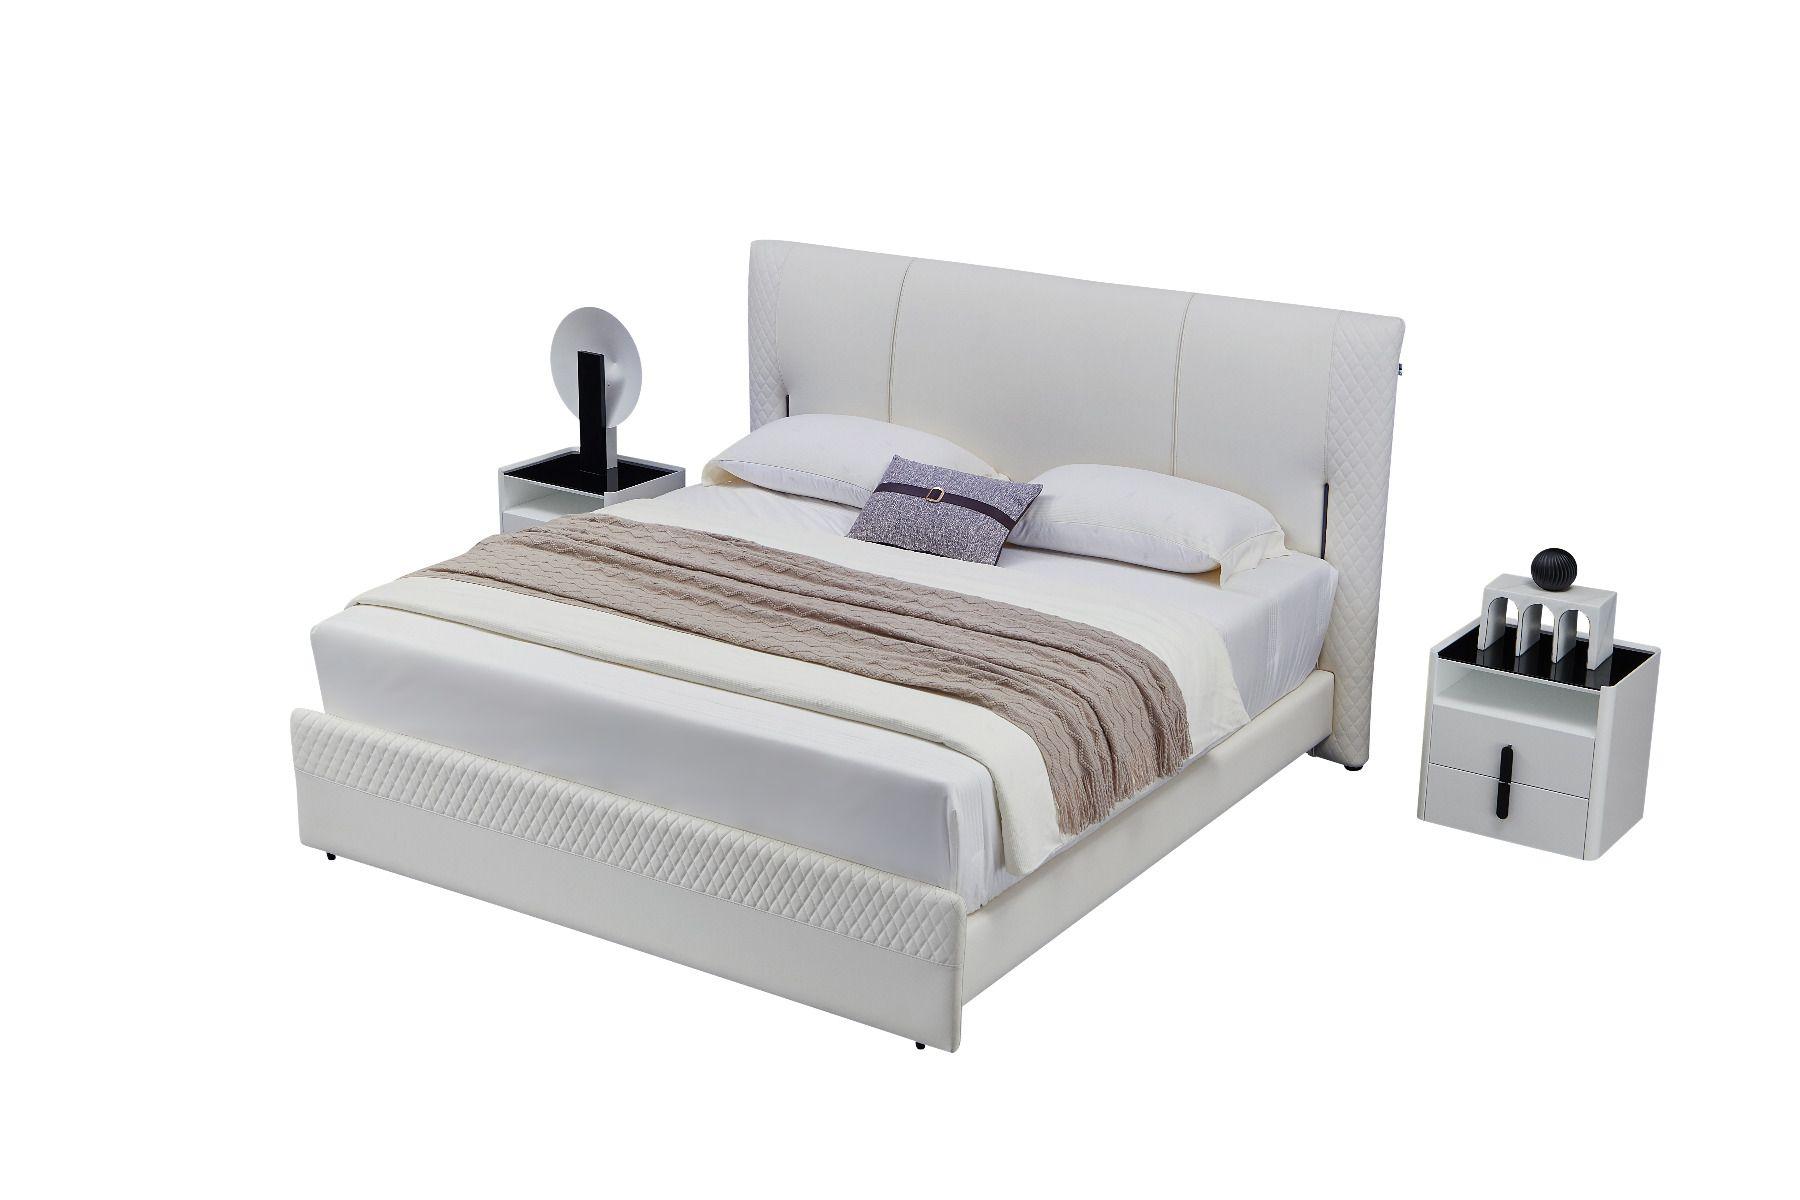 

    
American Eagle Furniture B-Y2003-EK / NS-Y2001 Platform Bedroom Set Gray B-Y2003-EK-3PC
